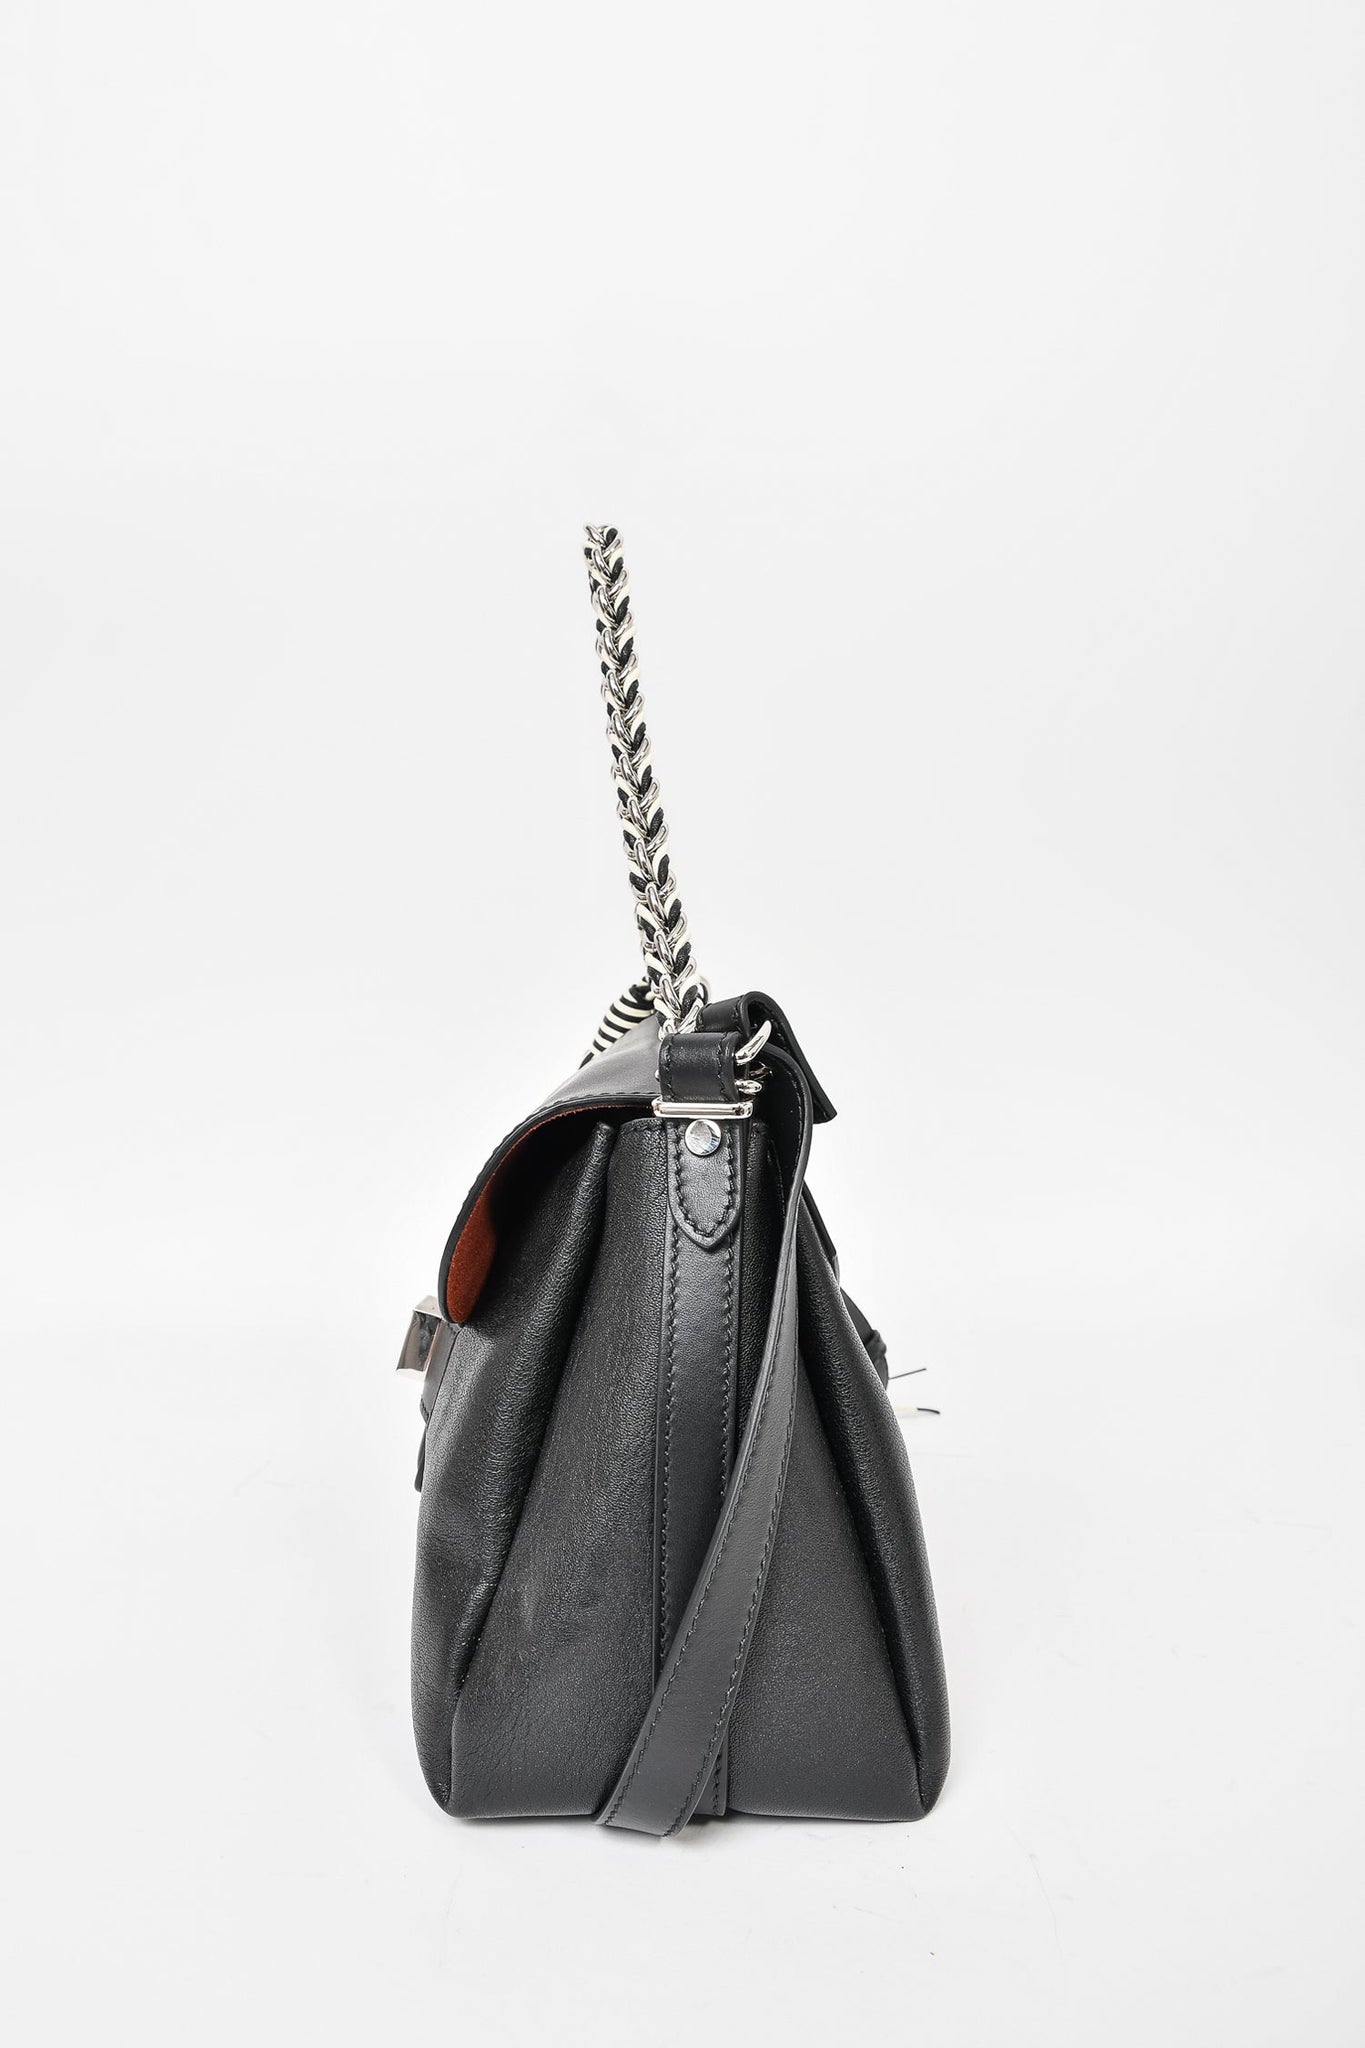 Proenza Schouler Black Leather Fringe Bag